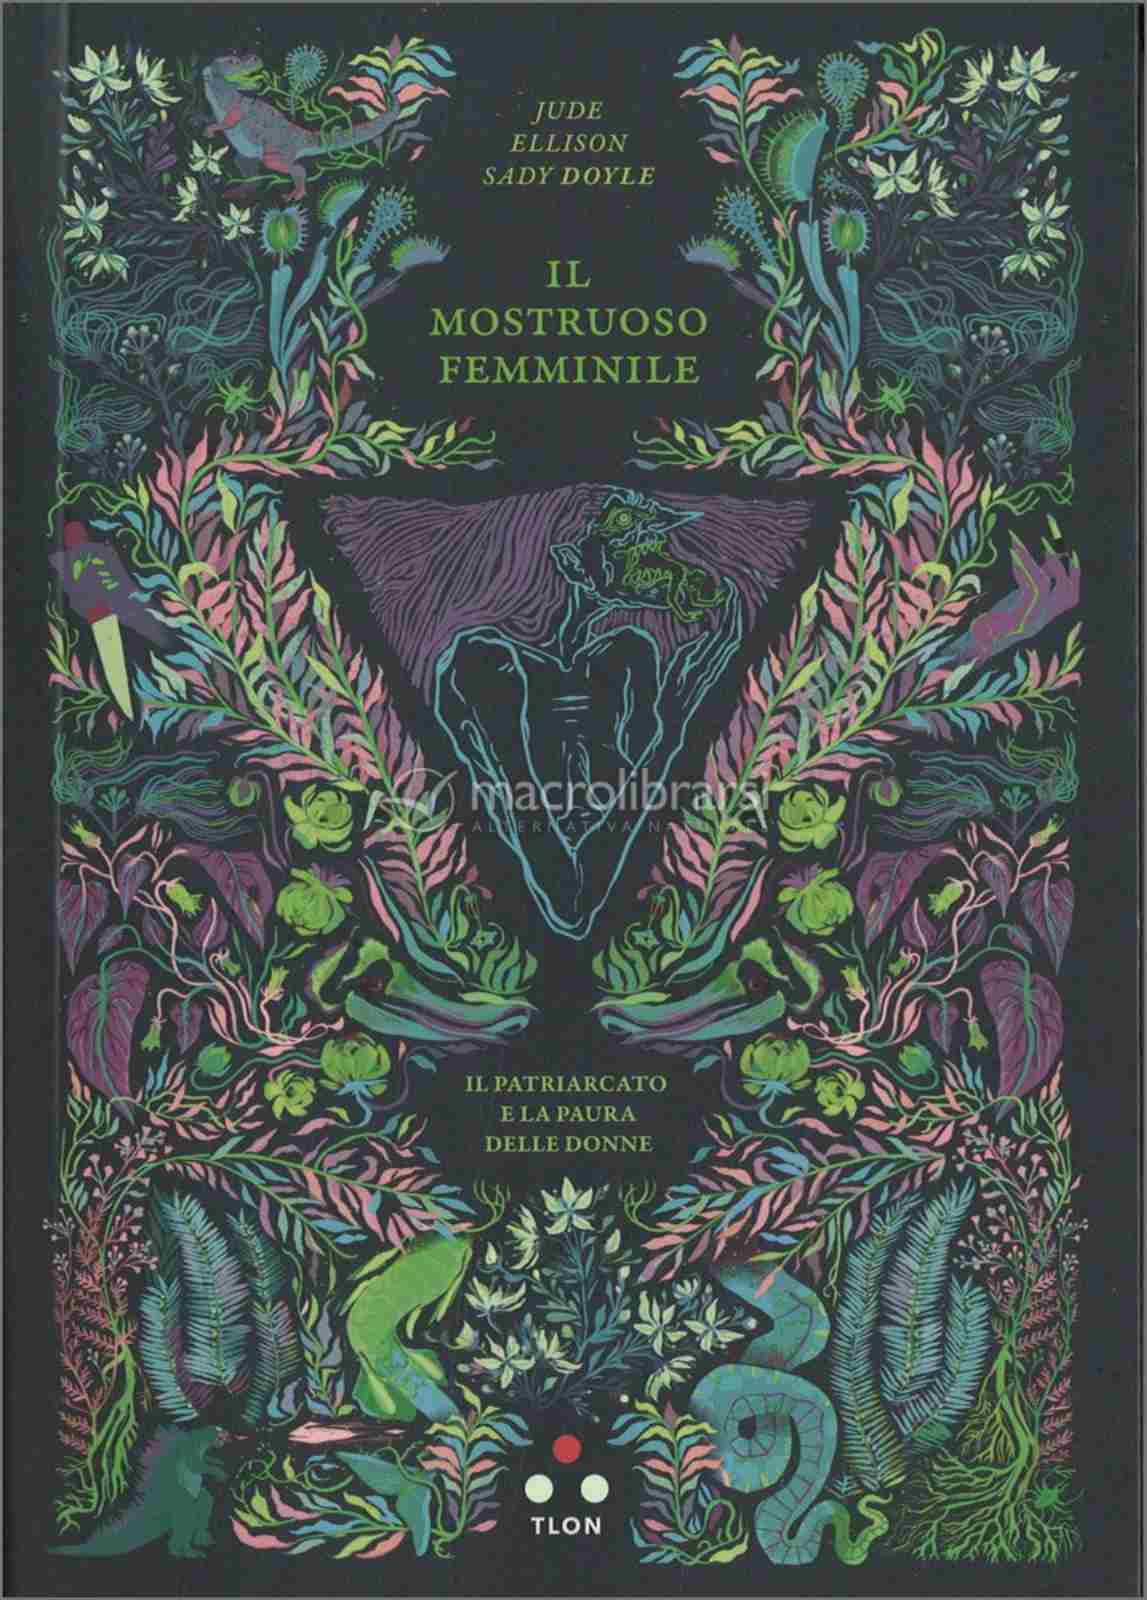 Copertina del libro il mostruoso femminile di Jude ellison dady doyle con copertina nera e disegni stilizzati di piante e fiori in verde azzurro e rosa